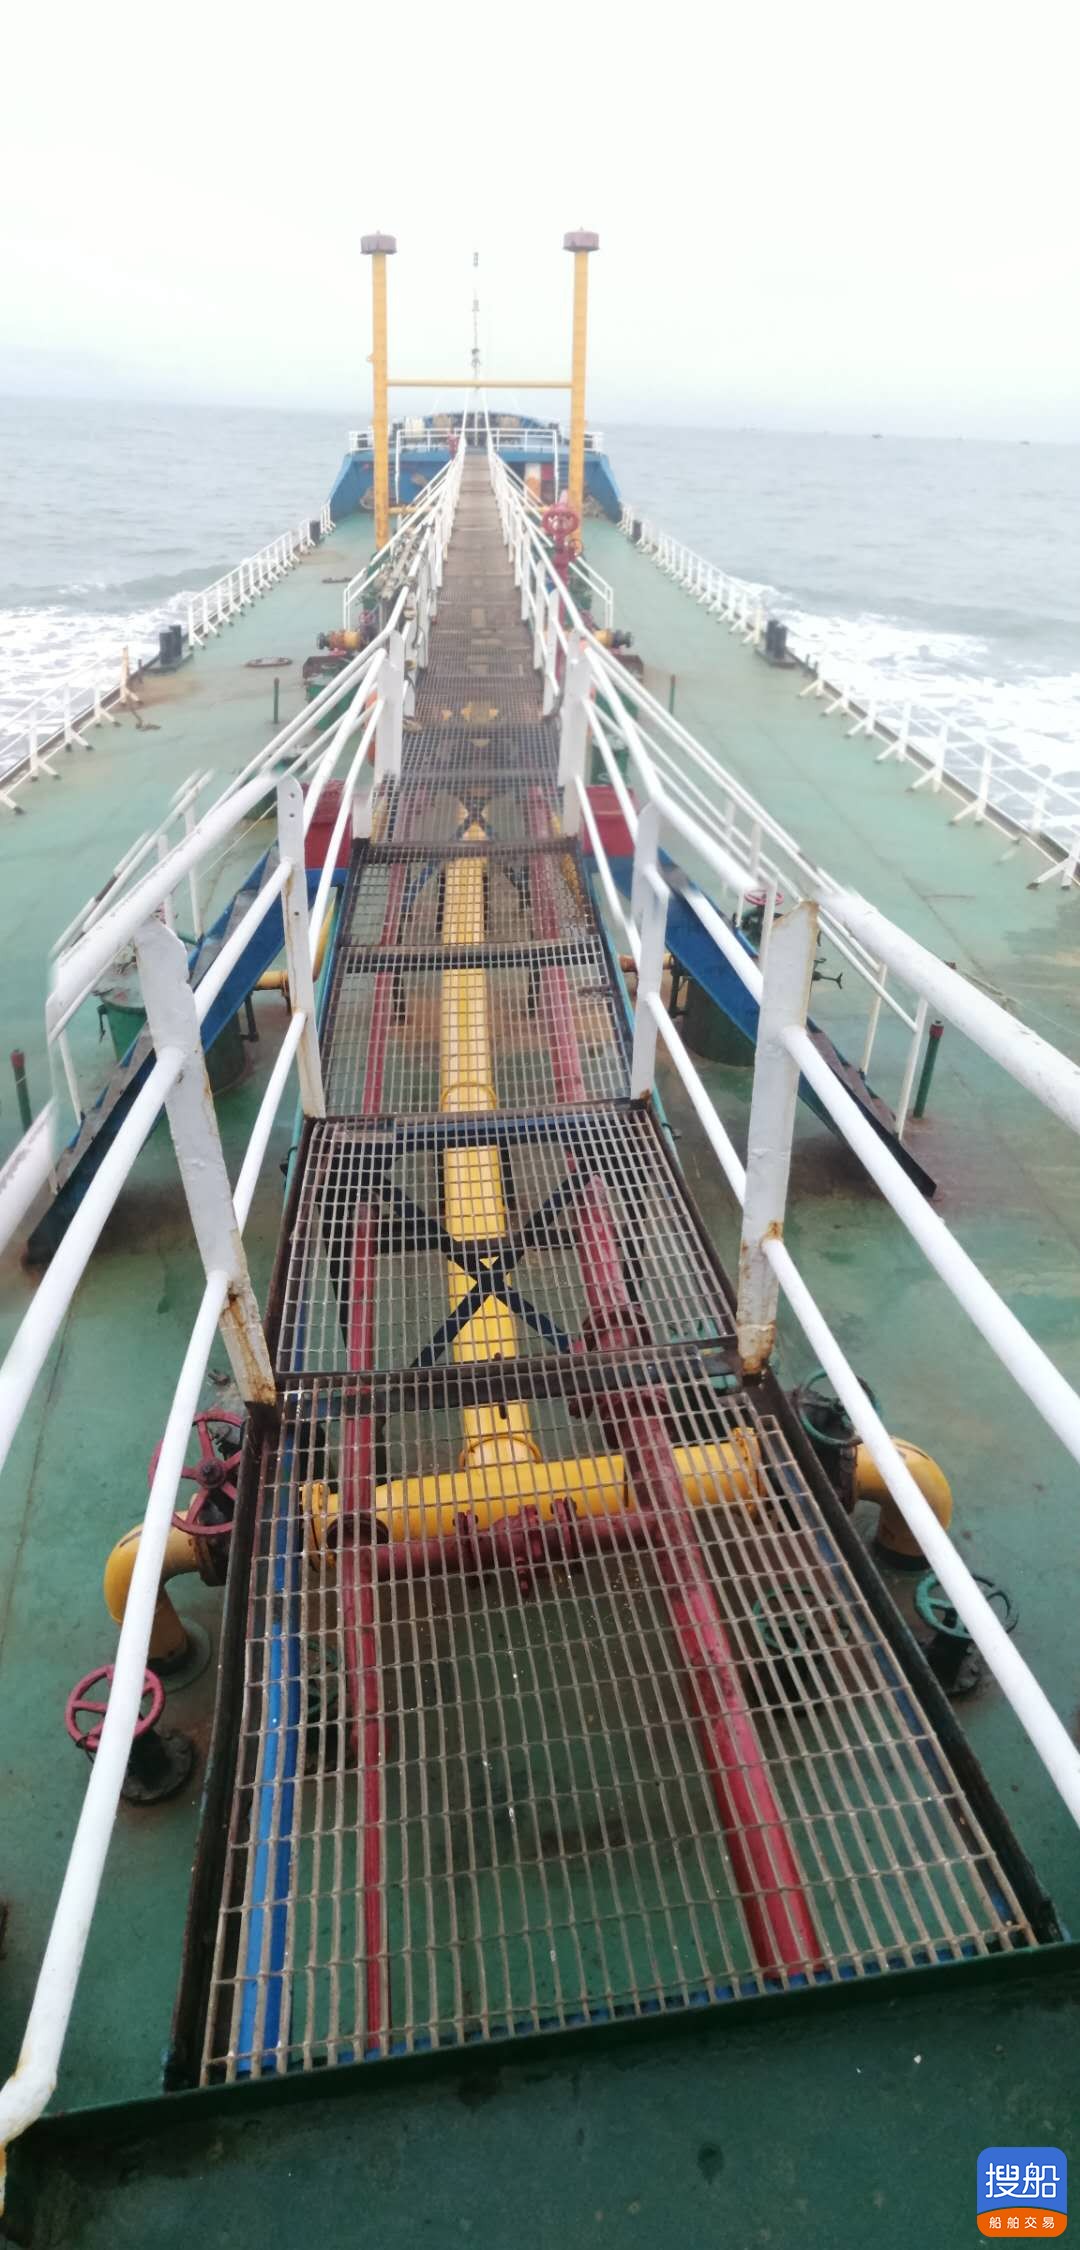 出售2200吨近海成品油船